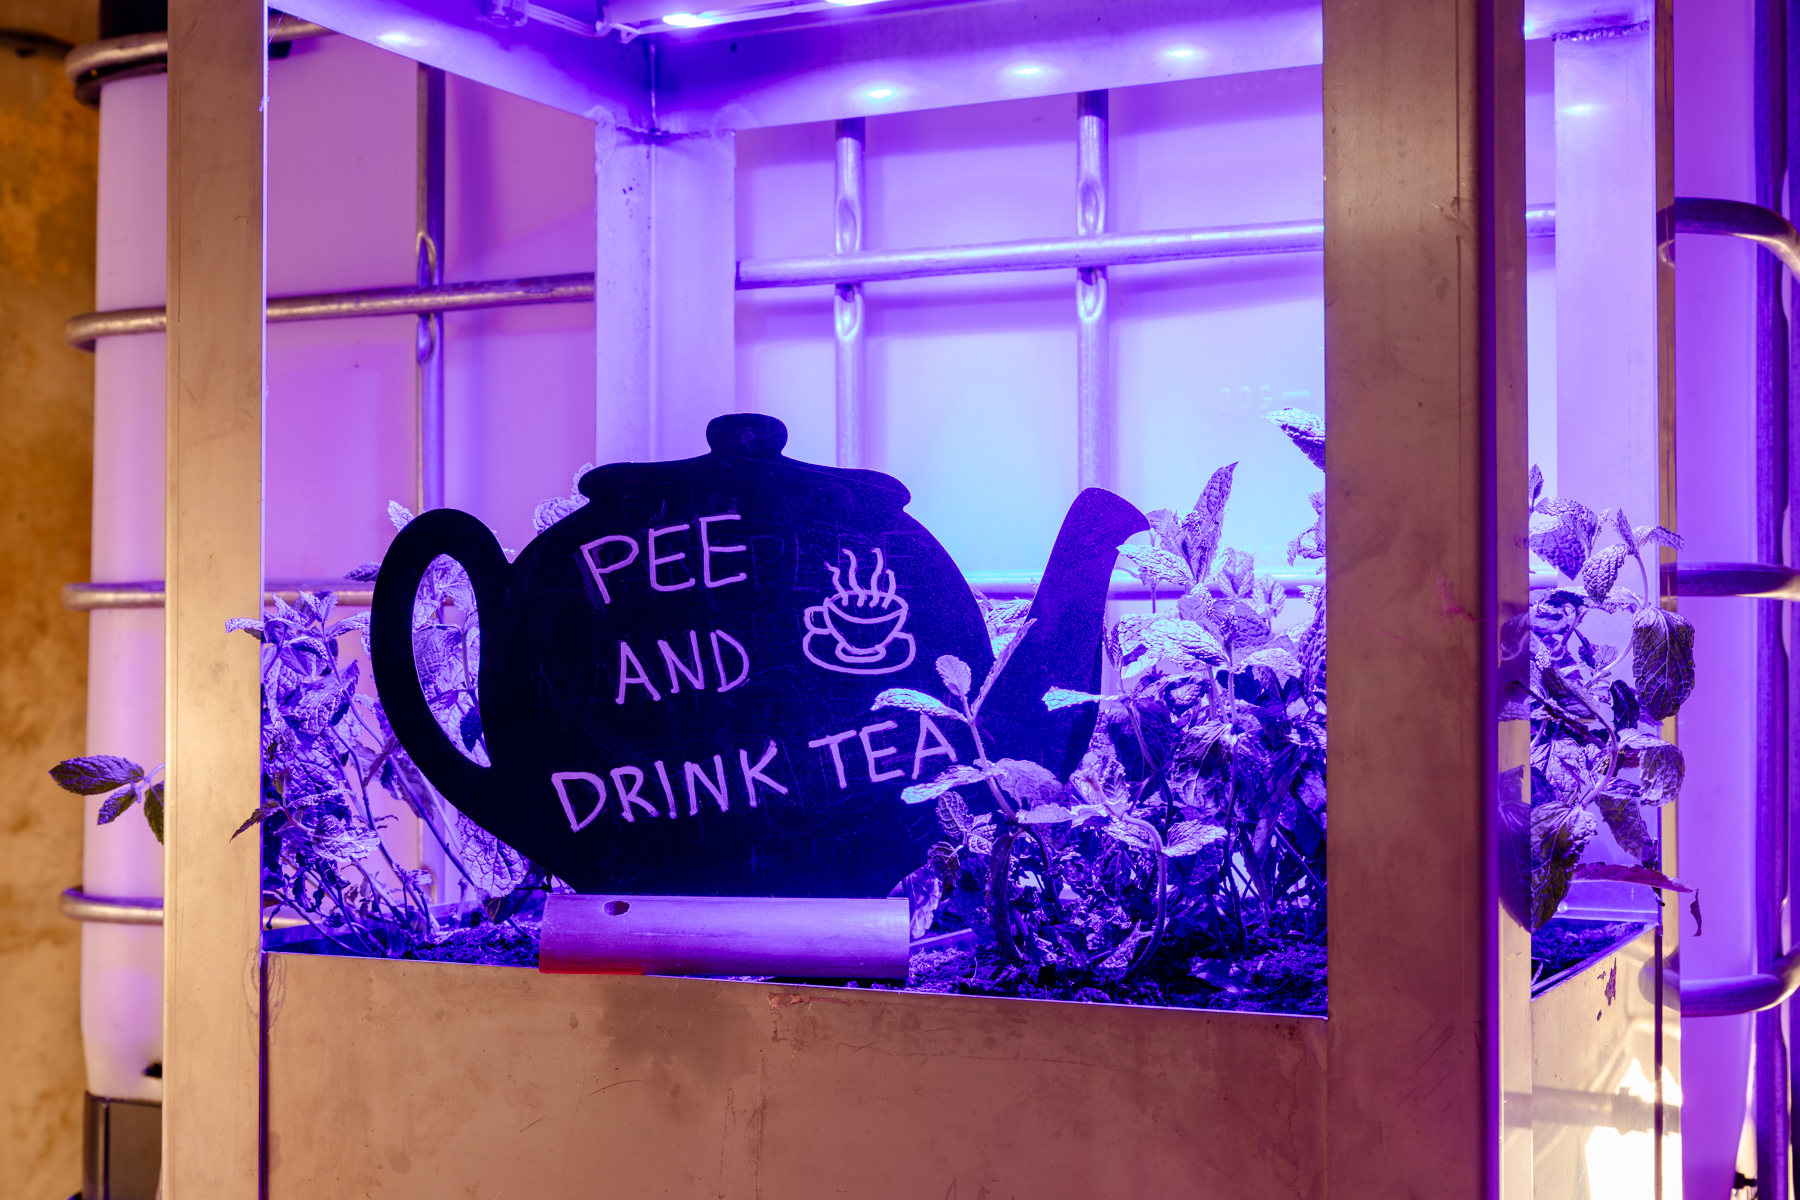 Planten in een plantenbak onder kunstlicht. In het midden staat een bord in de vorm van een theekop met de tekst 'pee and drink tea'.